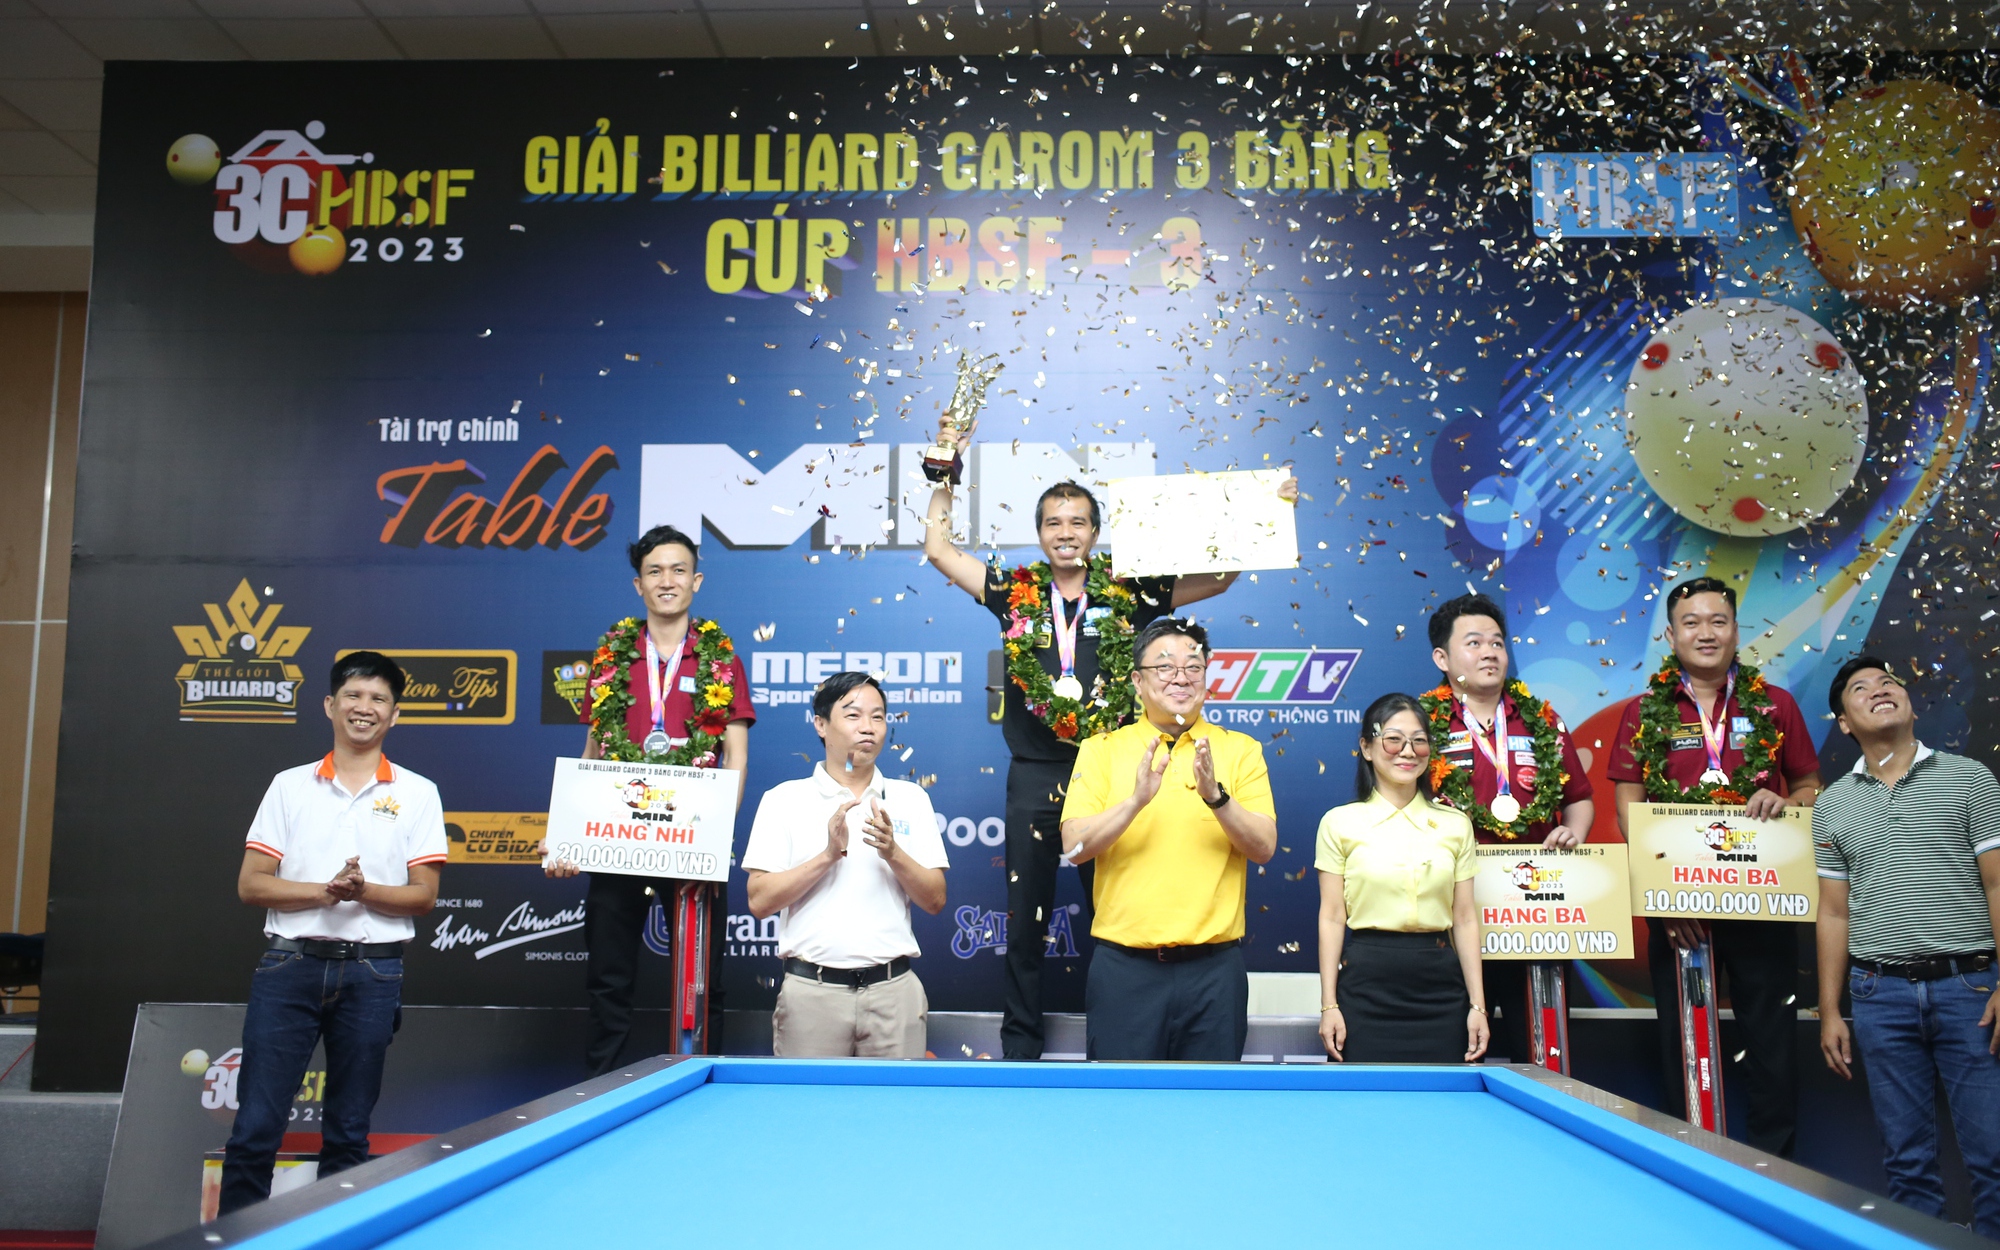 Ngược dòng trước học trò, Trần Quyết Chiến lên ngôi vô địch Giải Billiards carom 3 băng HBSF Cup